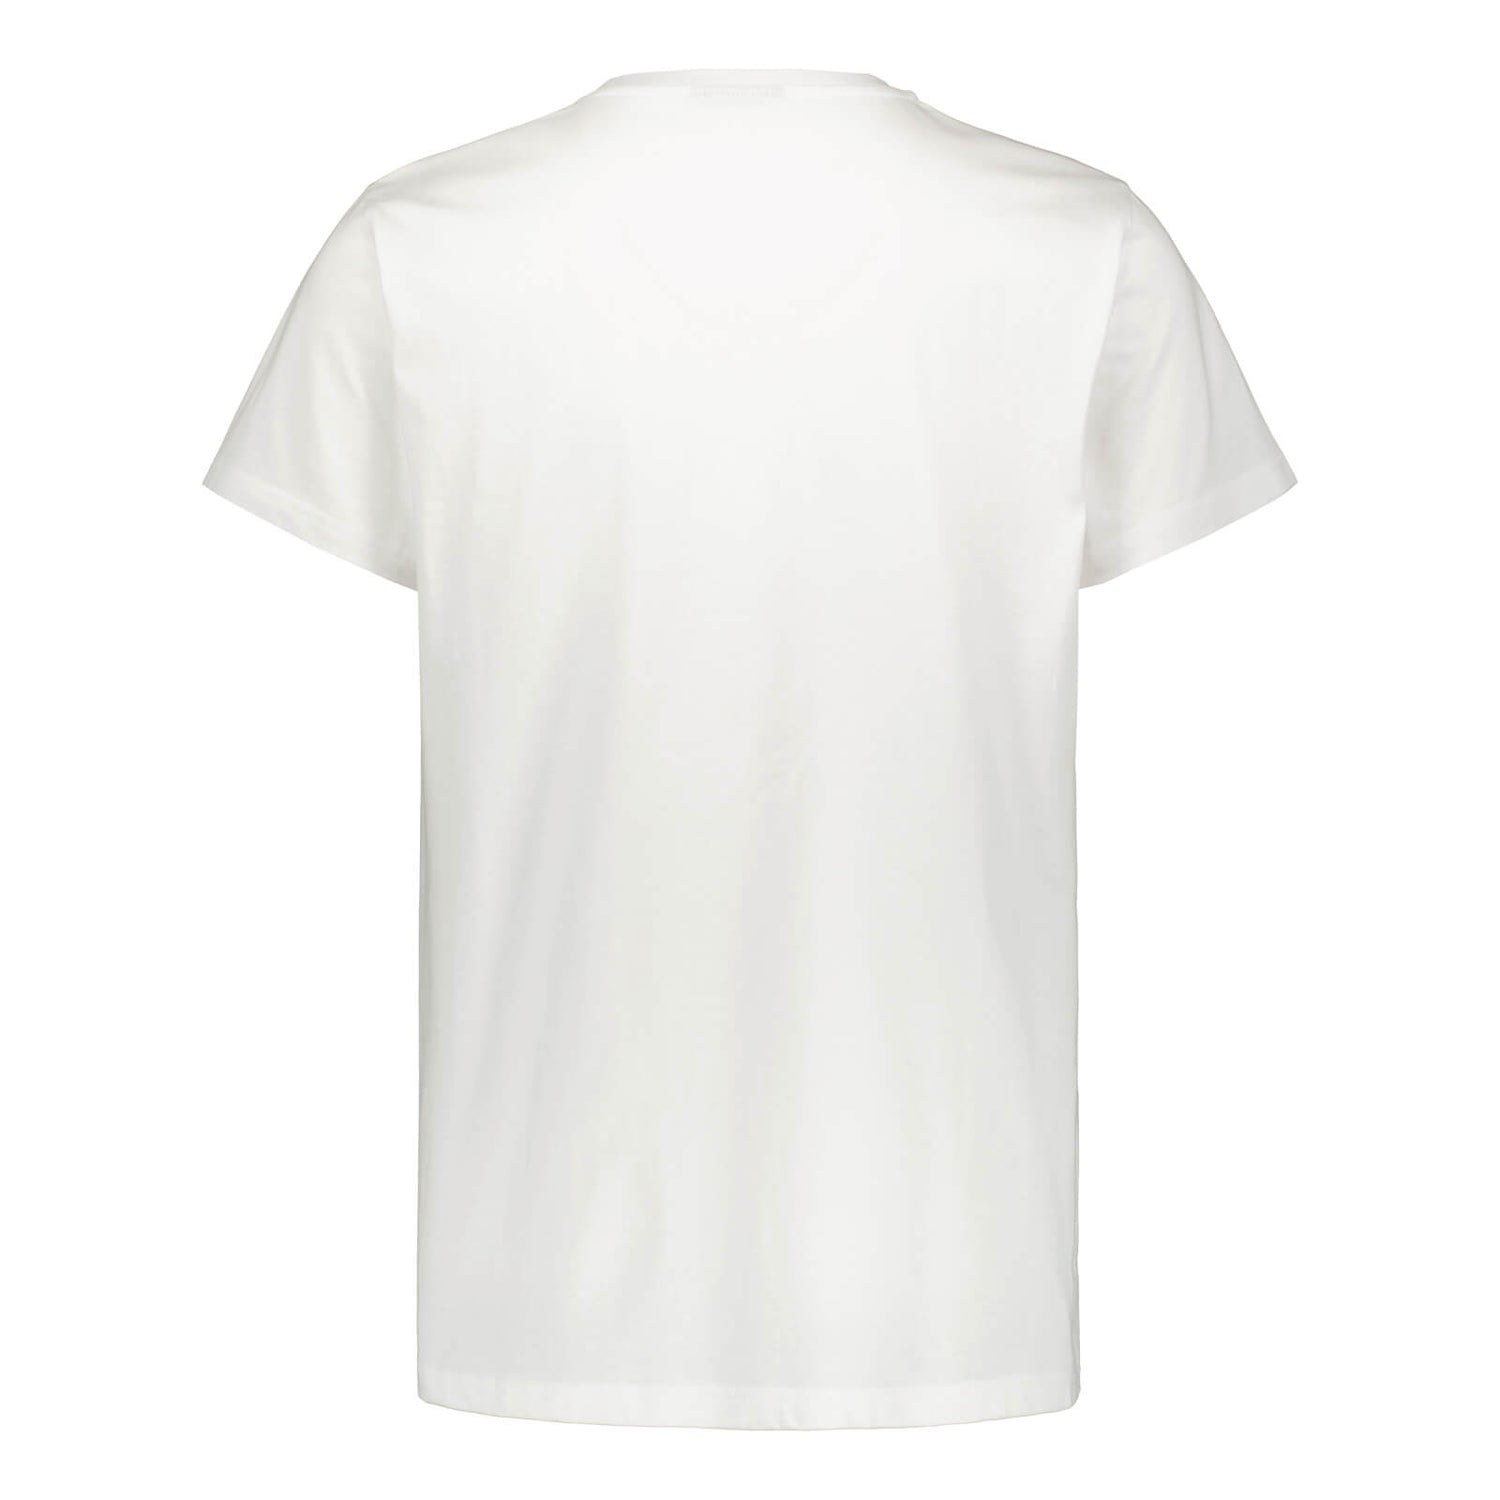 Littipeukku graafinen t-paita, Valkoinen